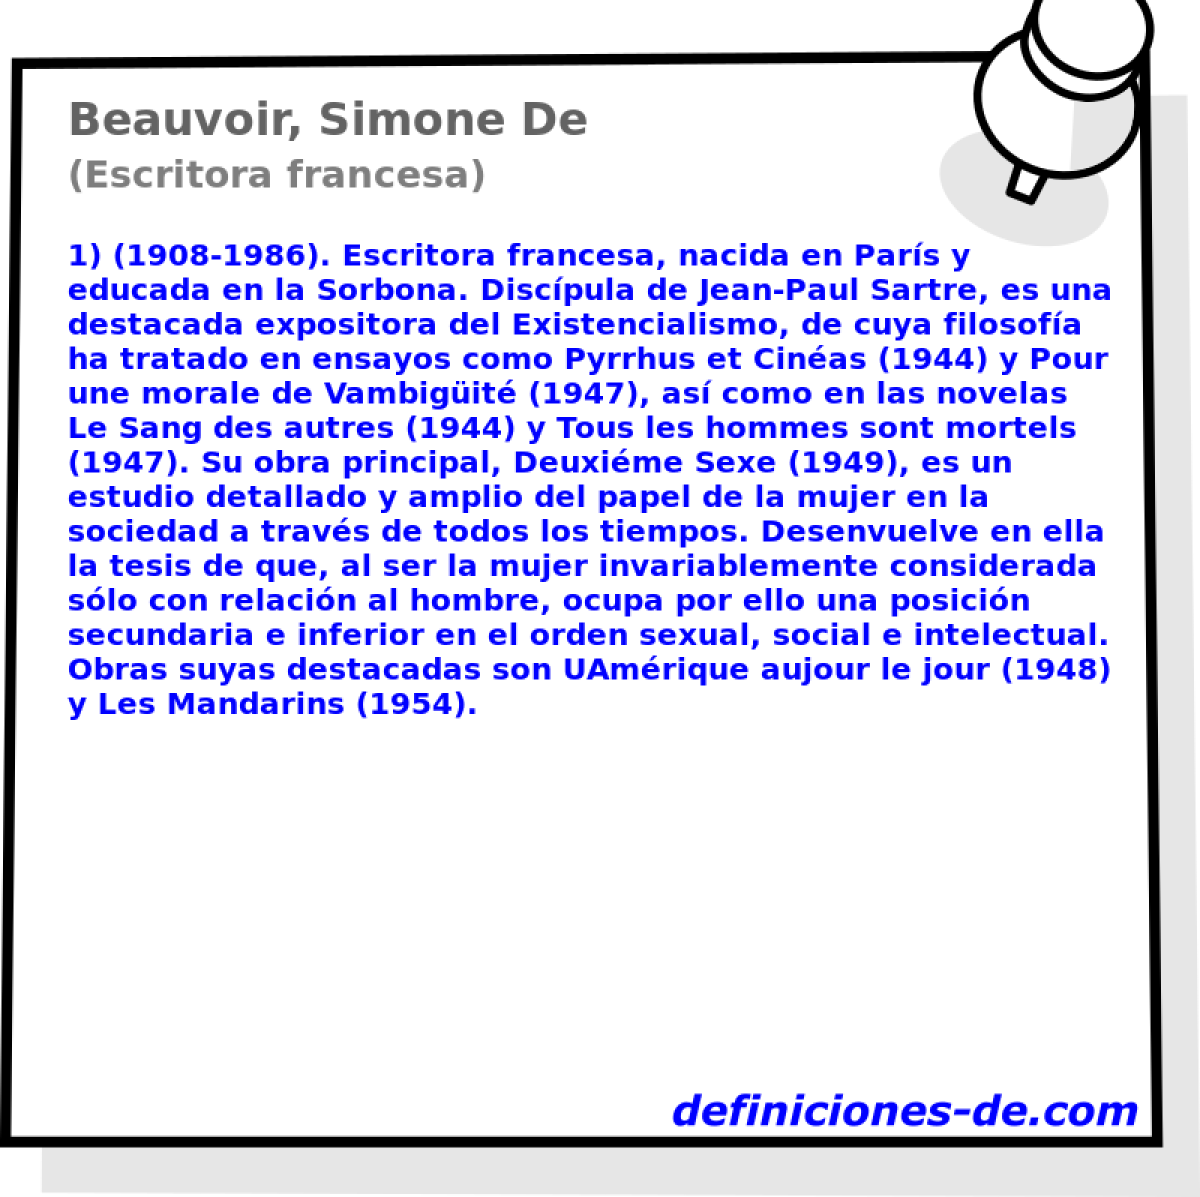 Beauvoir, Simone De (Escritora francesa)